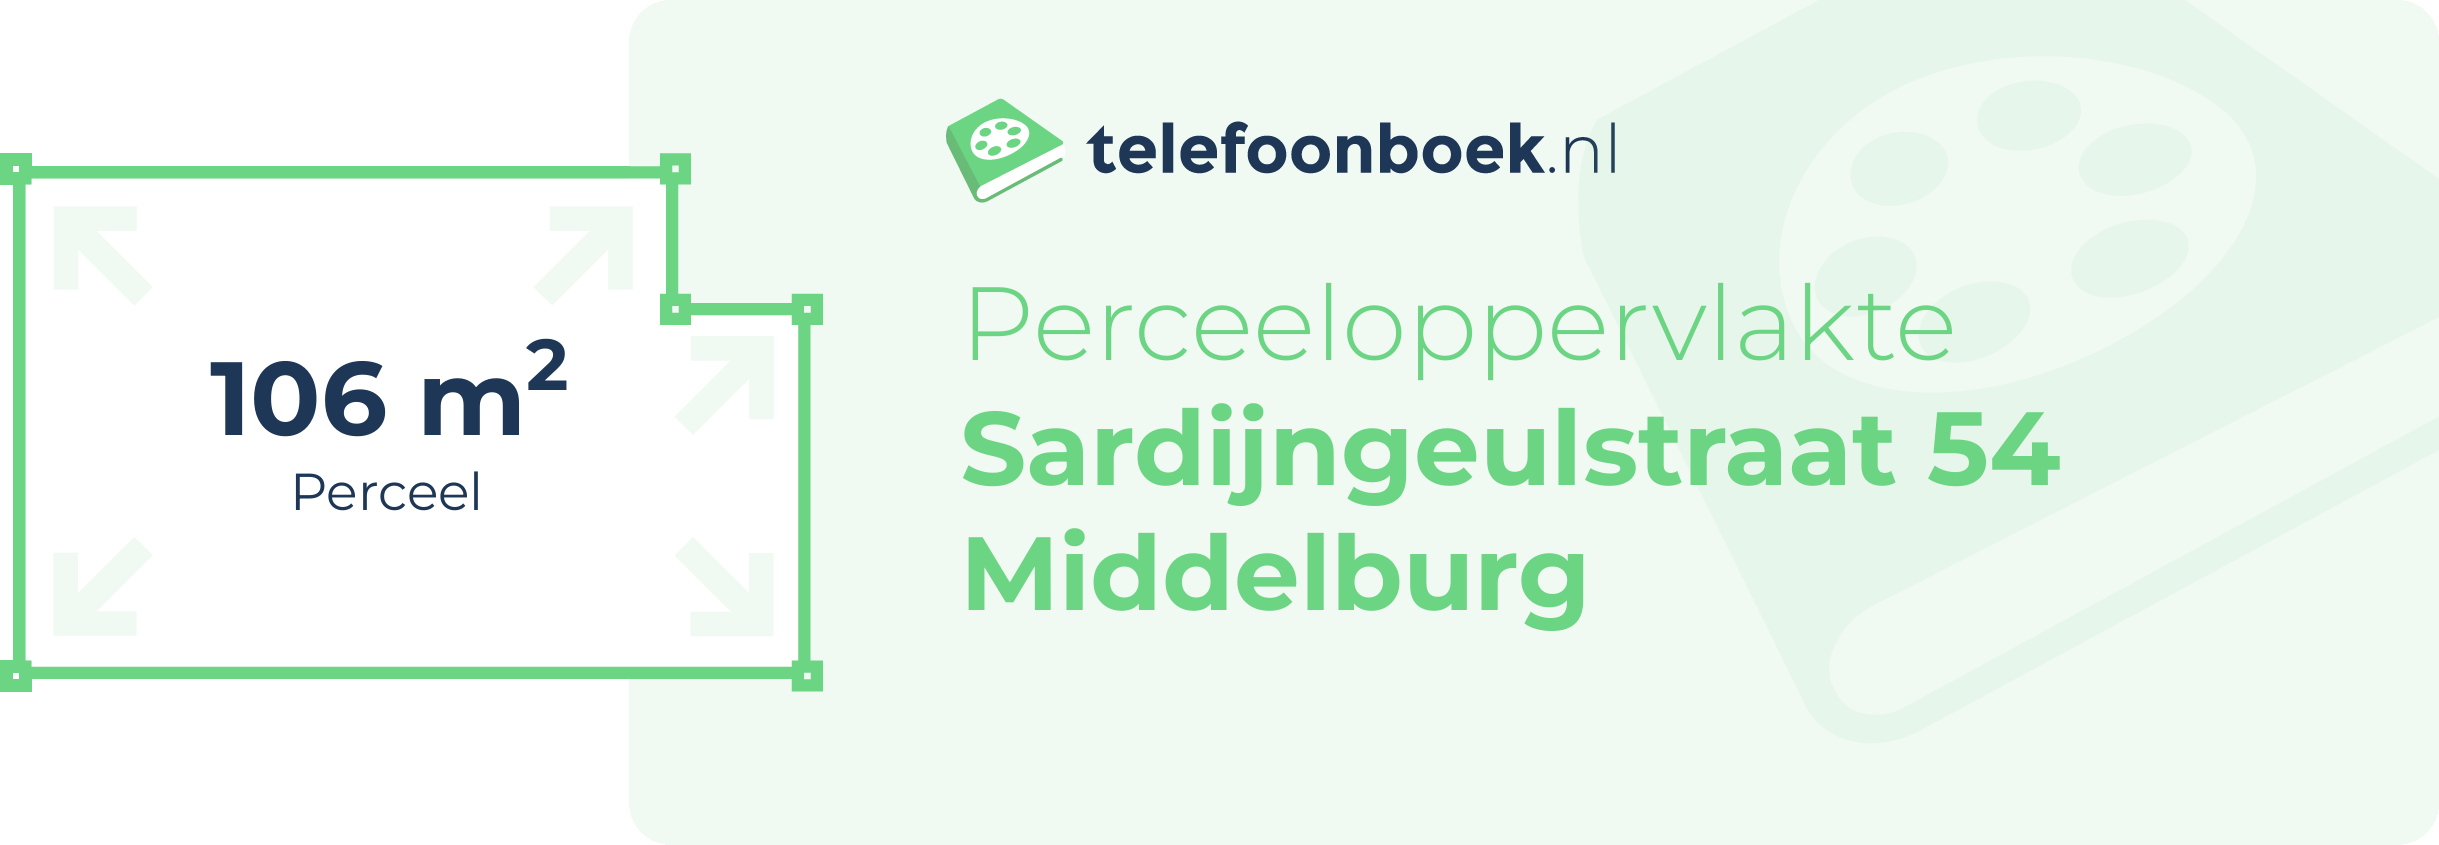 Perceeloppervlakte Sardijngeulstraat 54 Middelburg